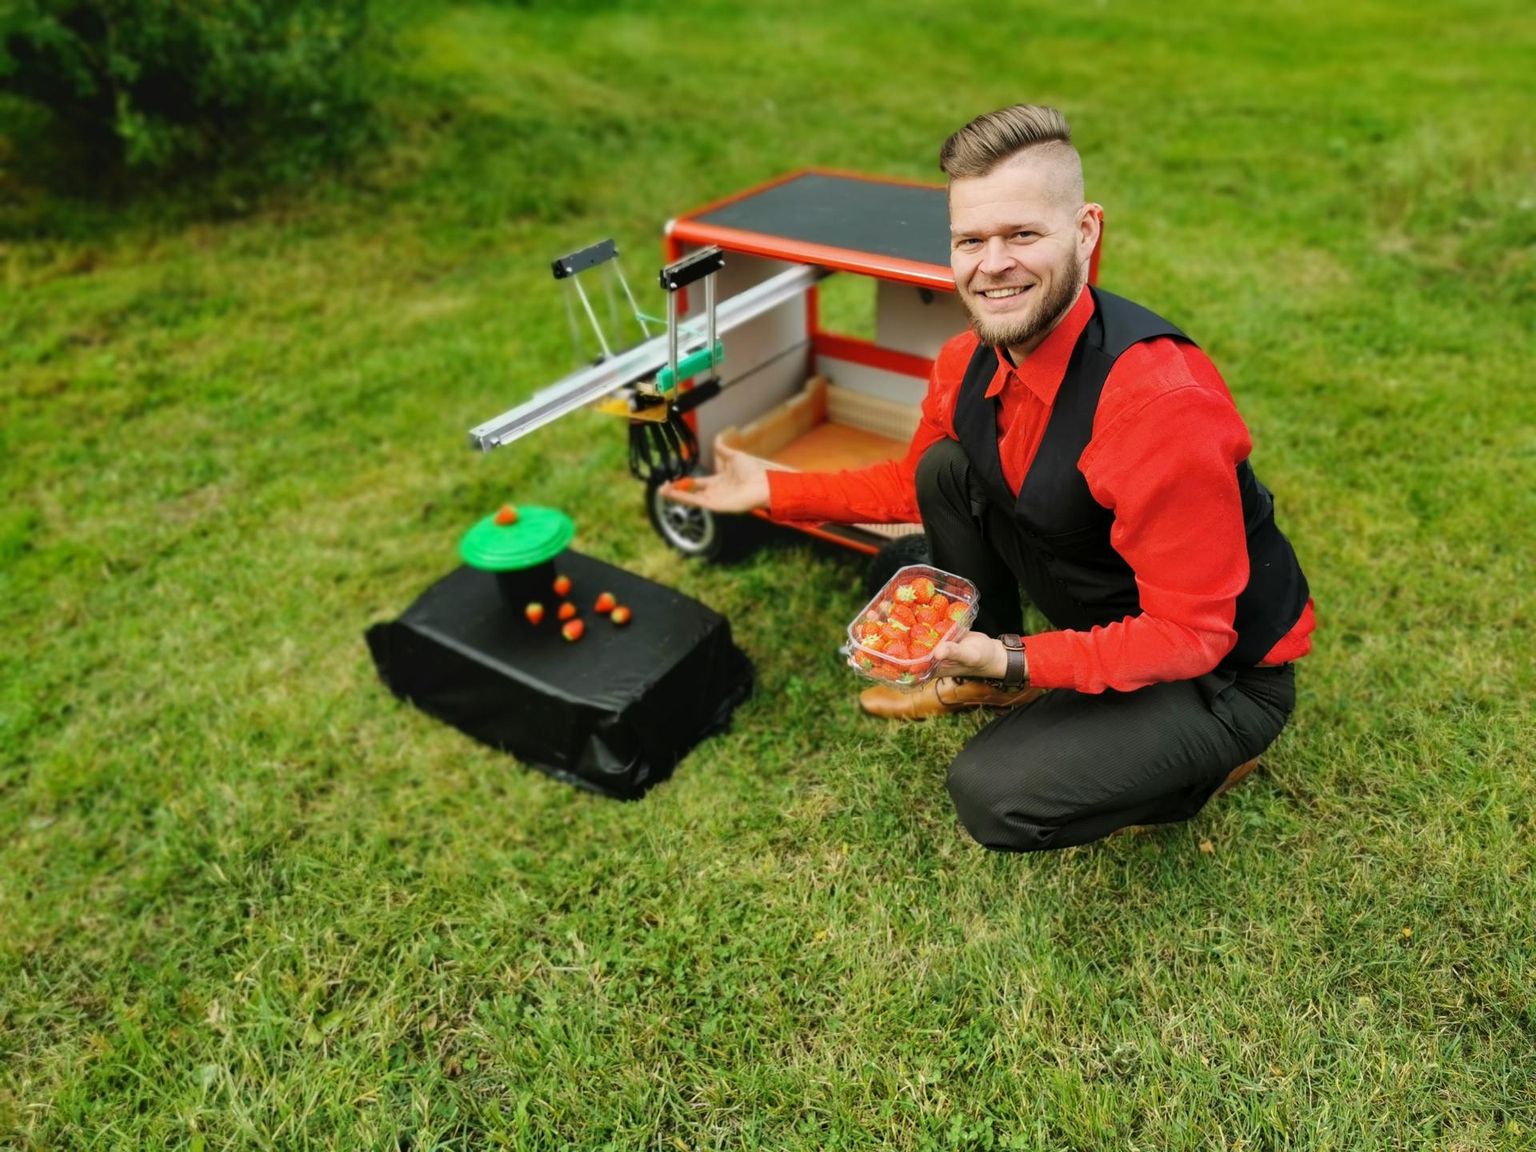 Suve lõpp: See on kolmanda põlvkonna maasikakorjamisrobot, tuleval suvel loodab Madis Merila robotite abil juba hektarite kaupa maasikaid korjata.
Erakogu